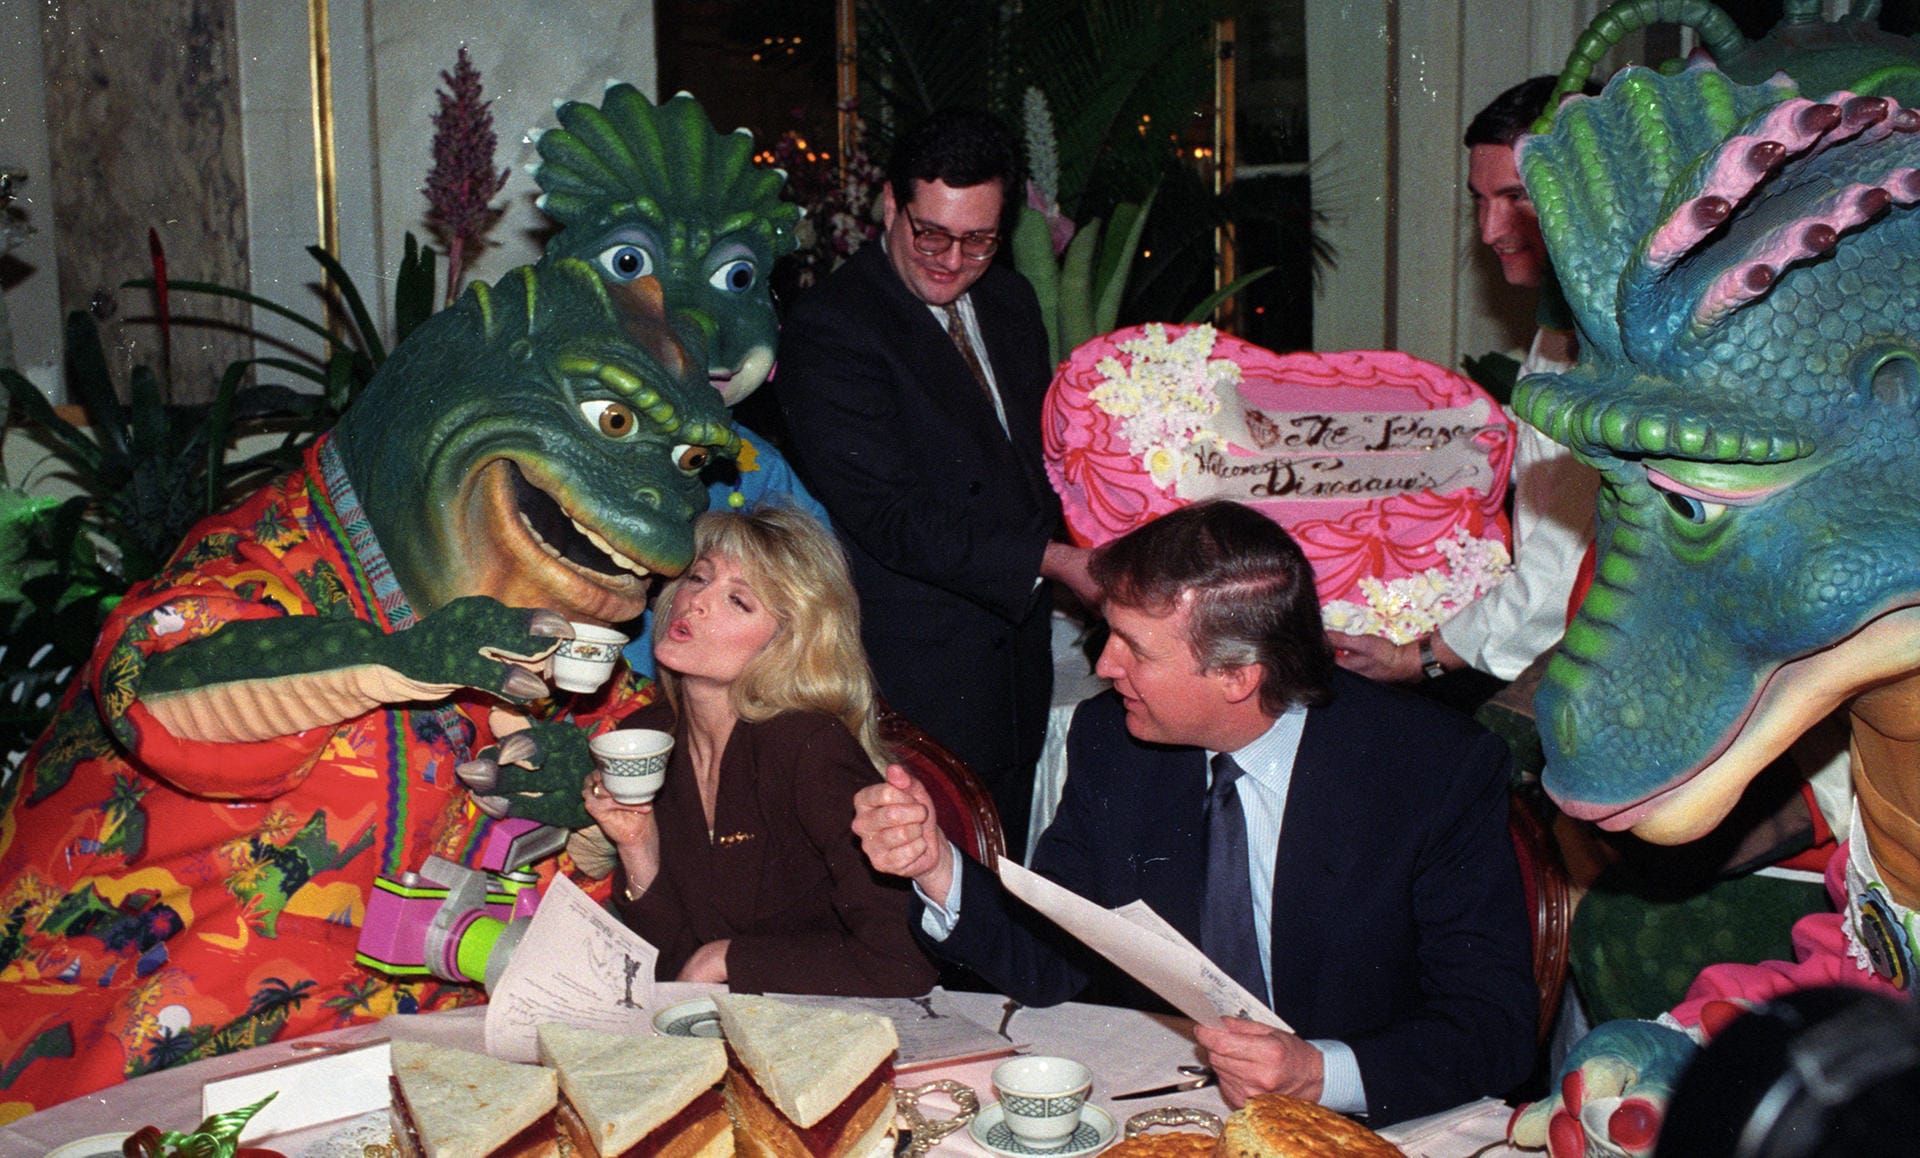 Wer hat bitte schon mal mit den aus dem Fernsehen bekannten "Dinos" gefeiert? Richtig. Donald Trump. Das ist aber längst nicht alles.